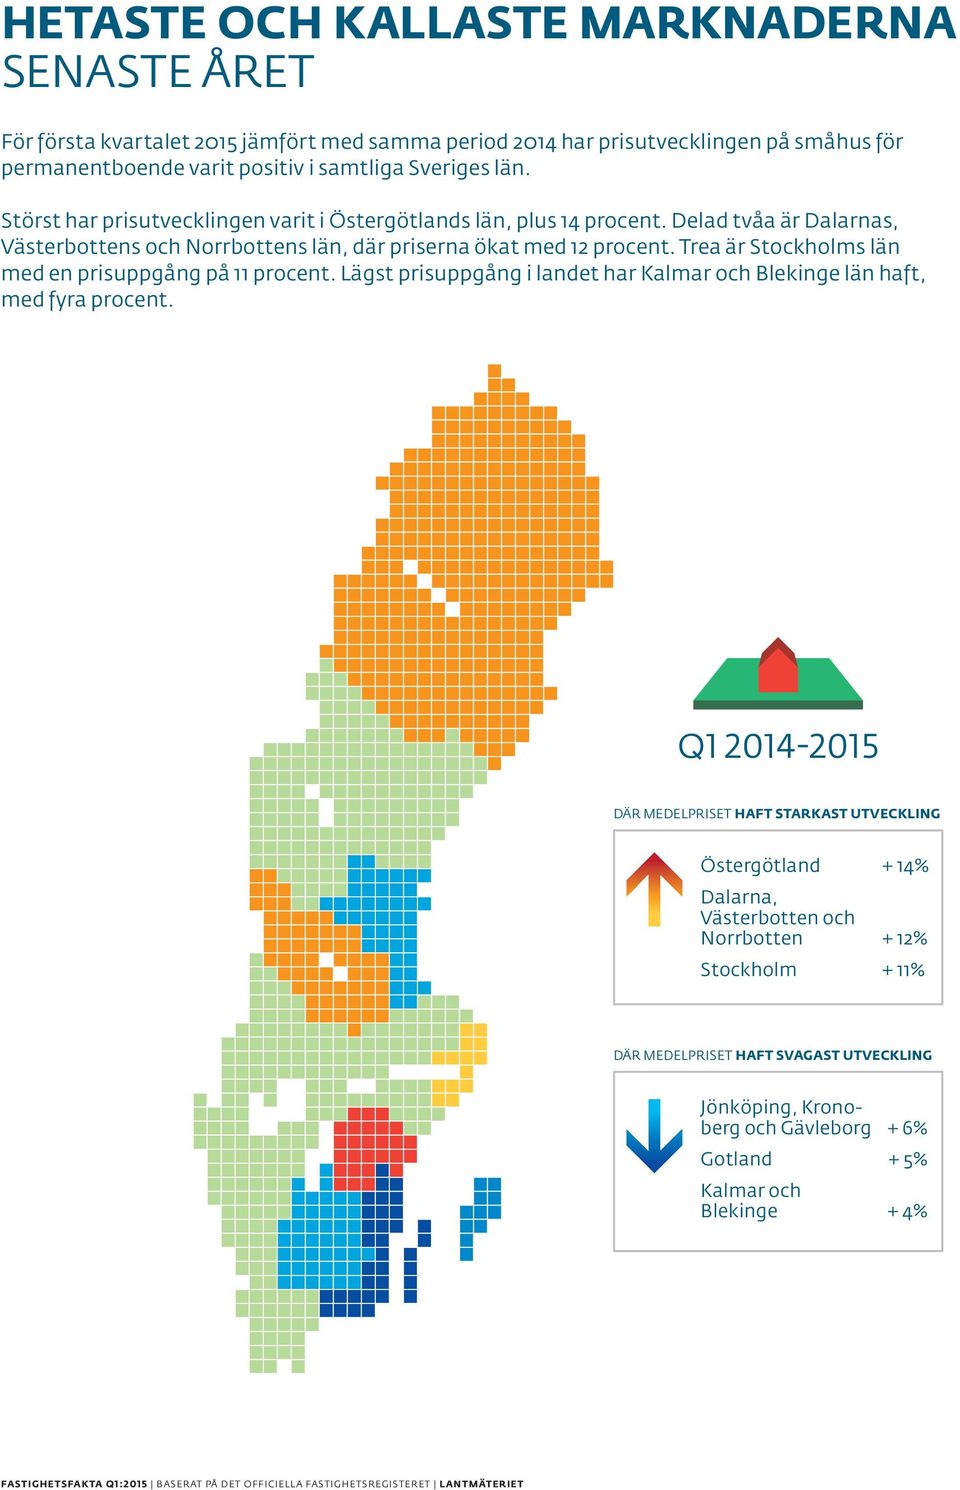 Delad tvåa är Dalarnas, Västerbottens och Norrbottens län, där priserna ökat med 12 procent. Trea är Stockholms län med en prisuppgång på 11 procent.